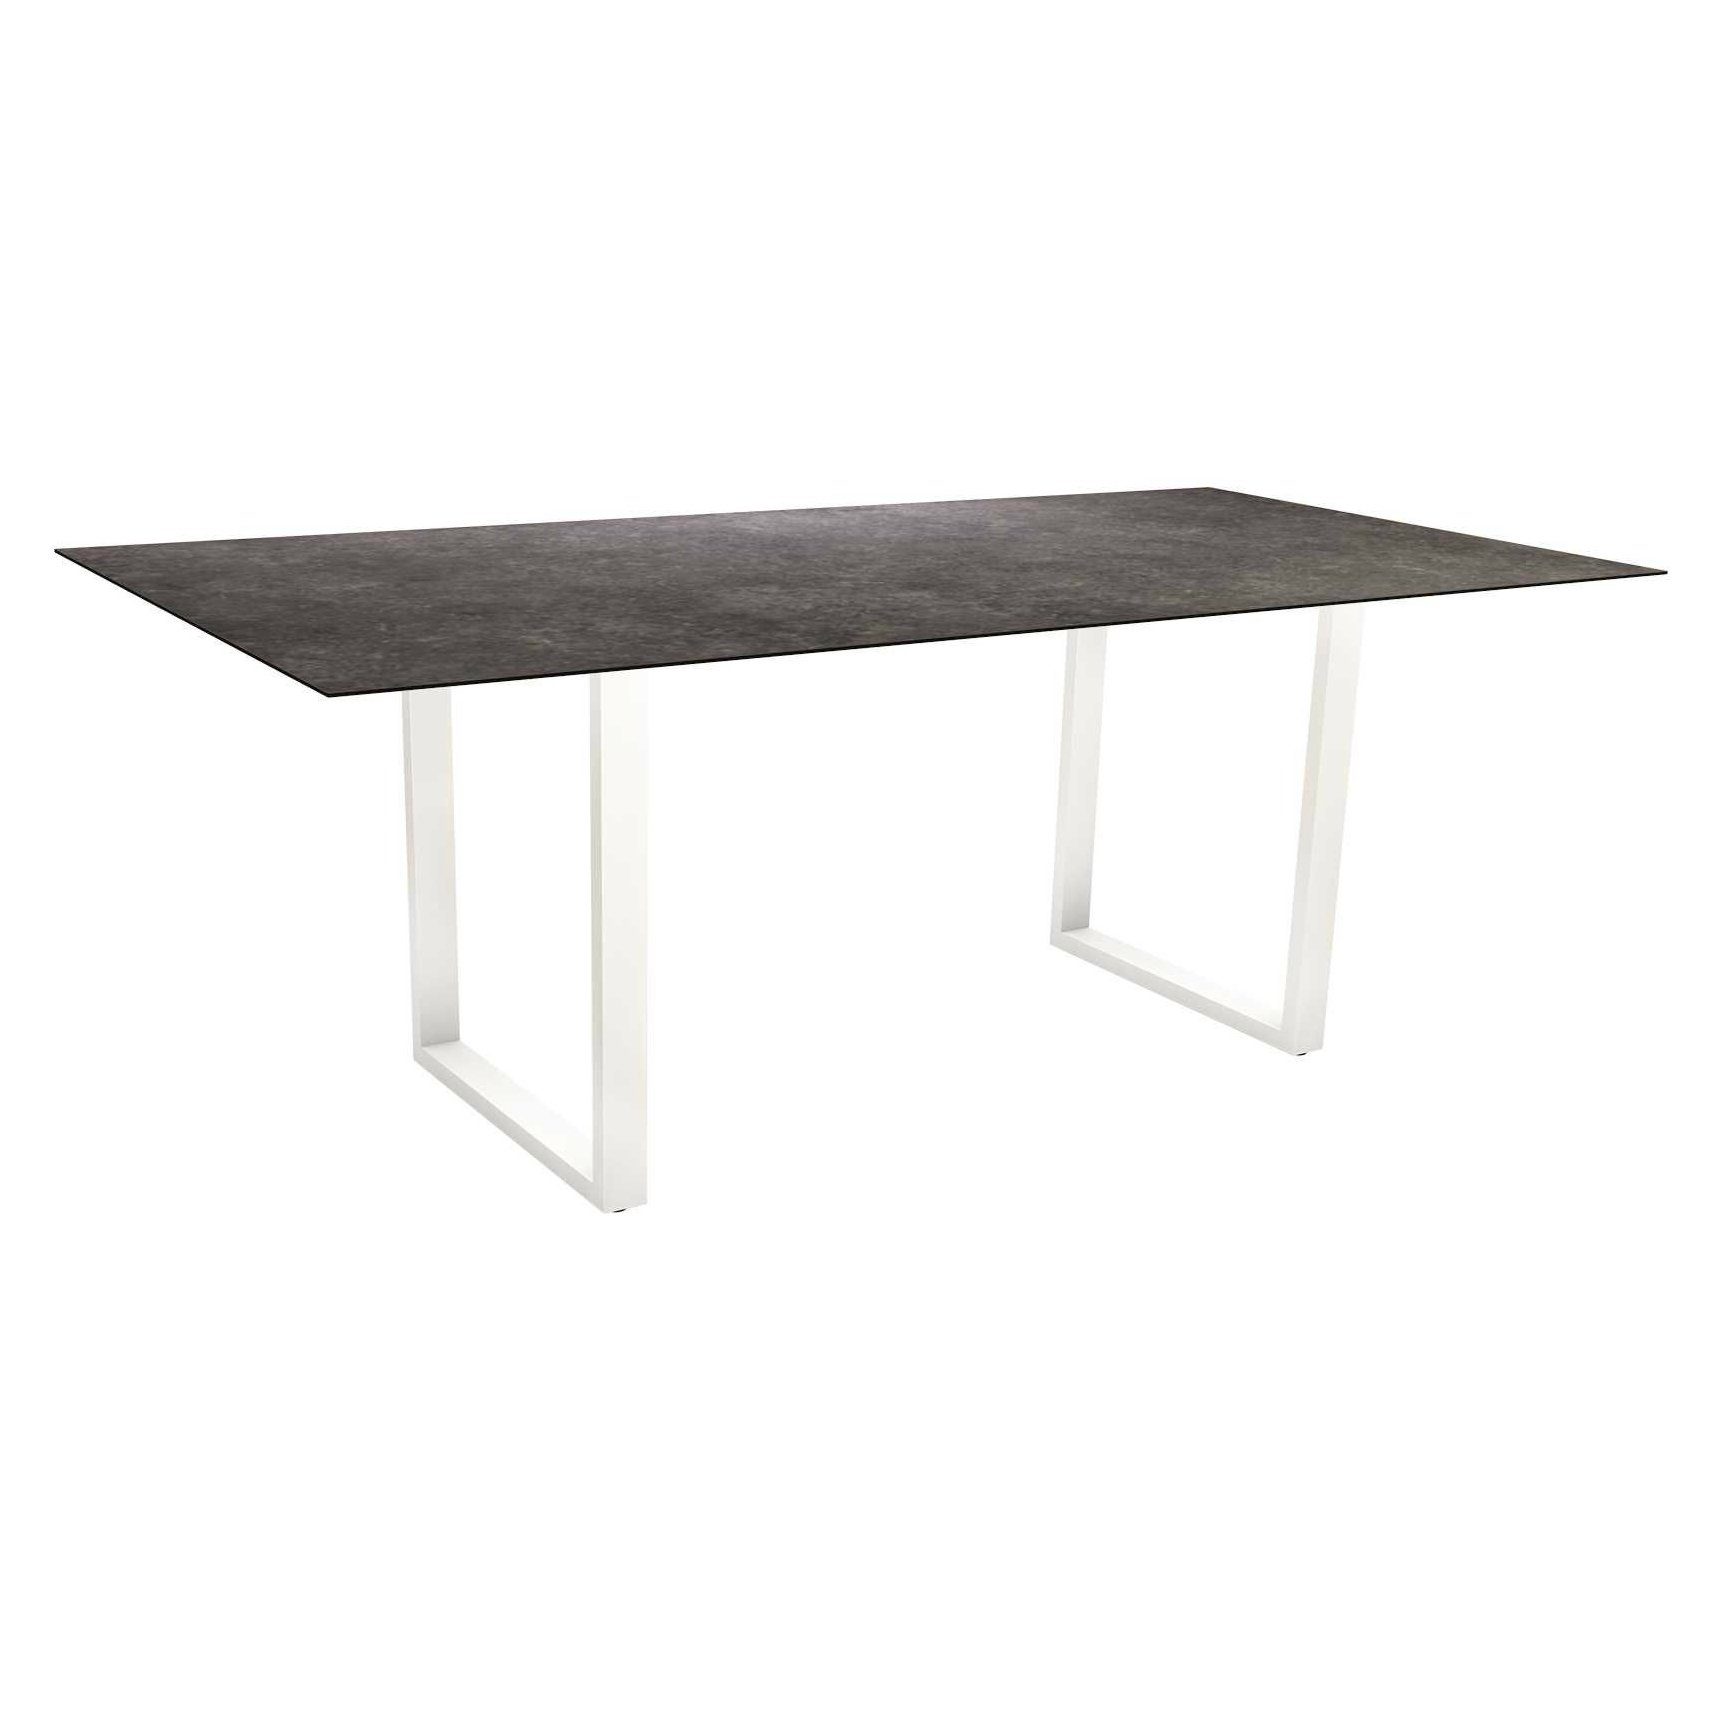 Stern Kufentisch, Maße: 200x100x73 cm, Gestell Aluminium weiß, Tischplatte HPL Vintage grau